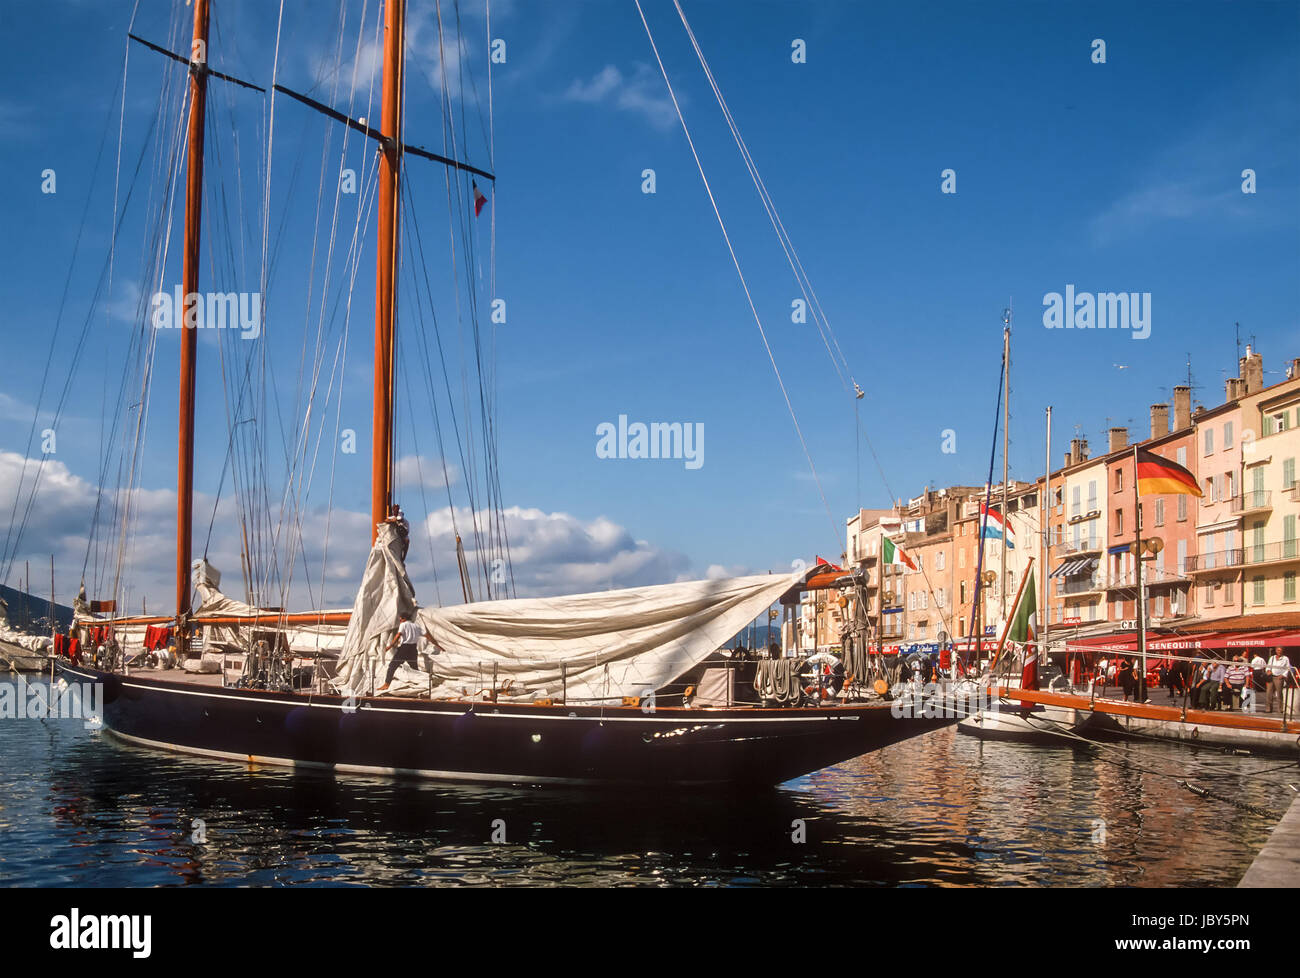 Segelyacht im Hafen von St. Tropez, Cote Azur, Frankreich Stock Photo ...